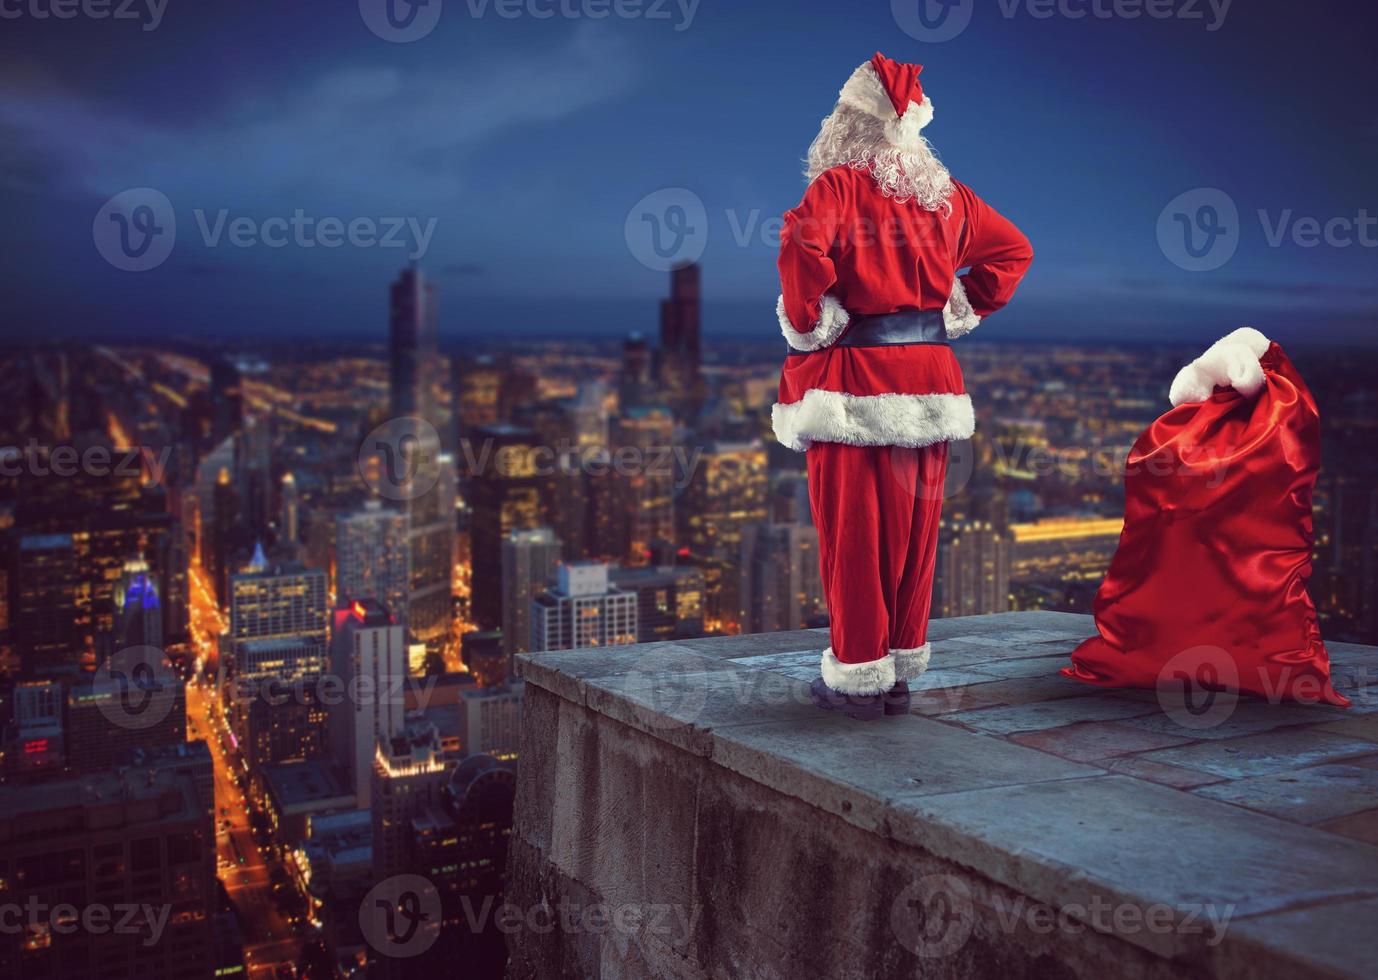 Papa Noel claus mira abajo en el ciudad esperando a entregar el regalos foto